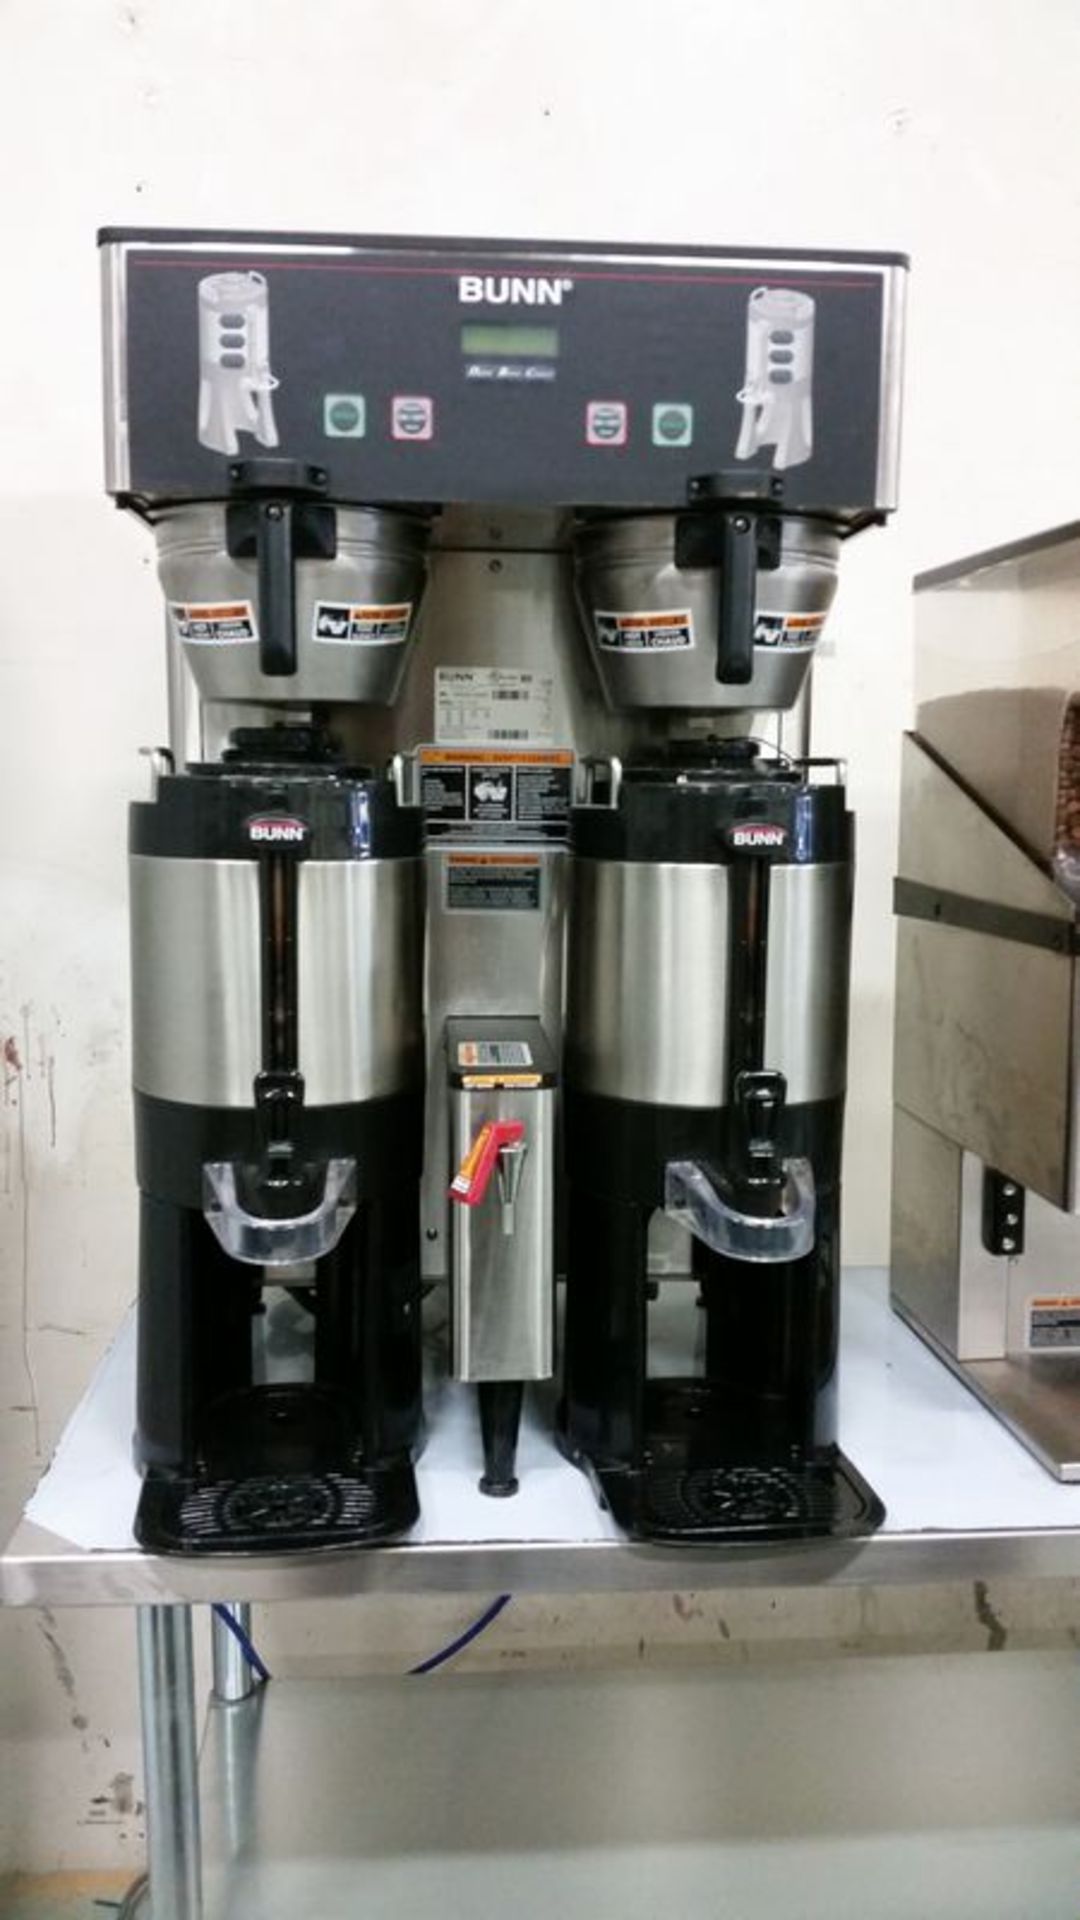 Bunn dual coffee maker - New in 2013